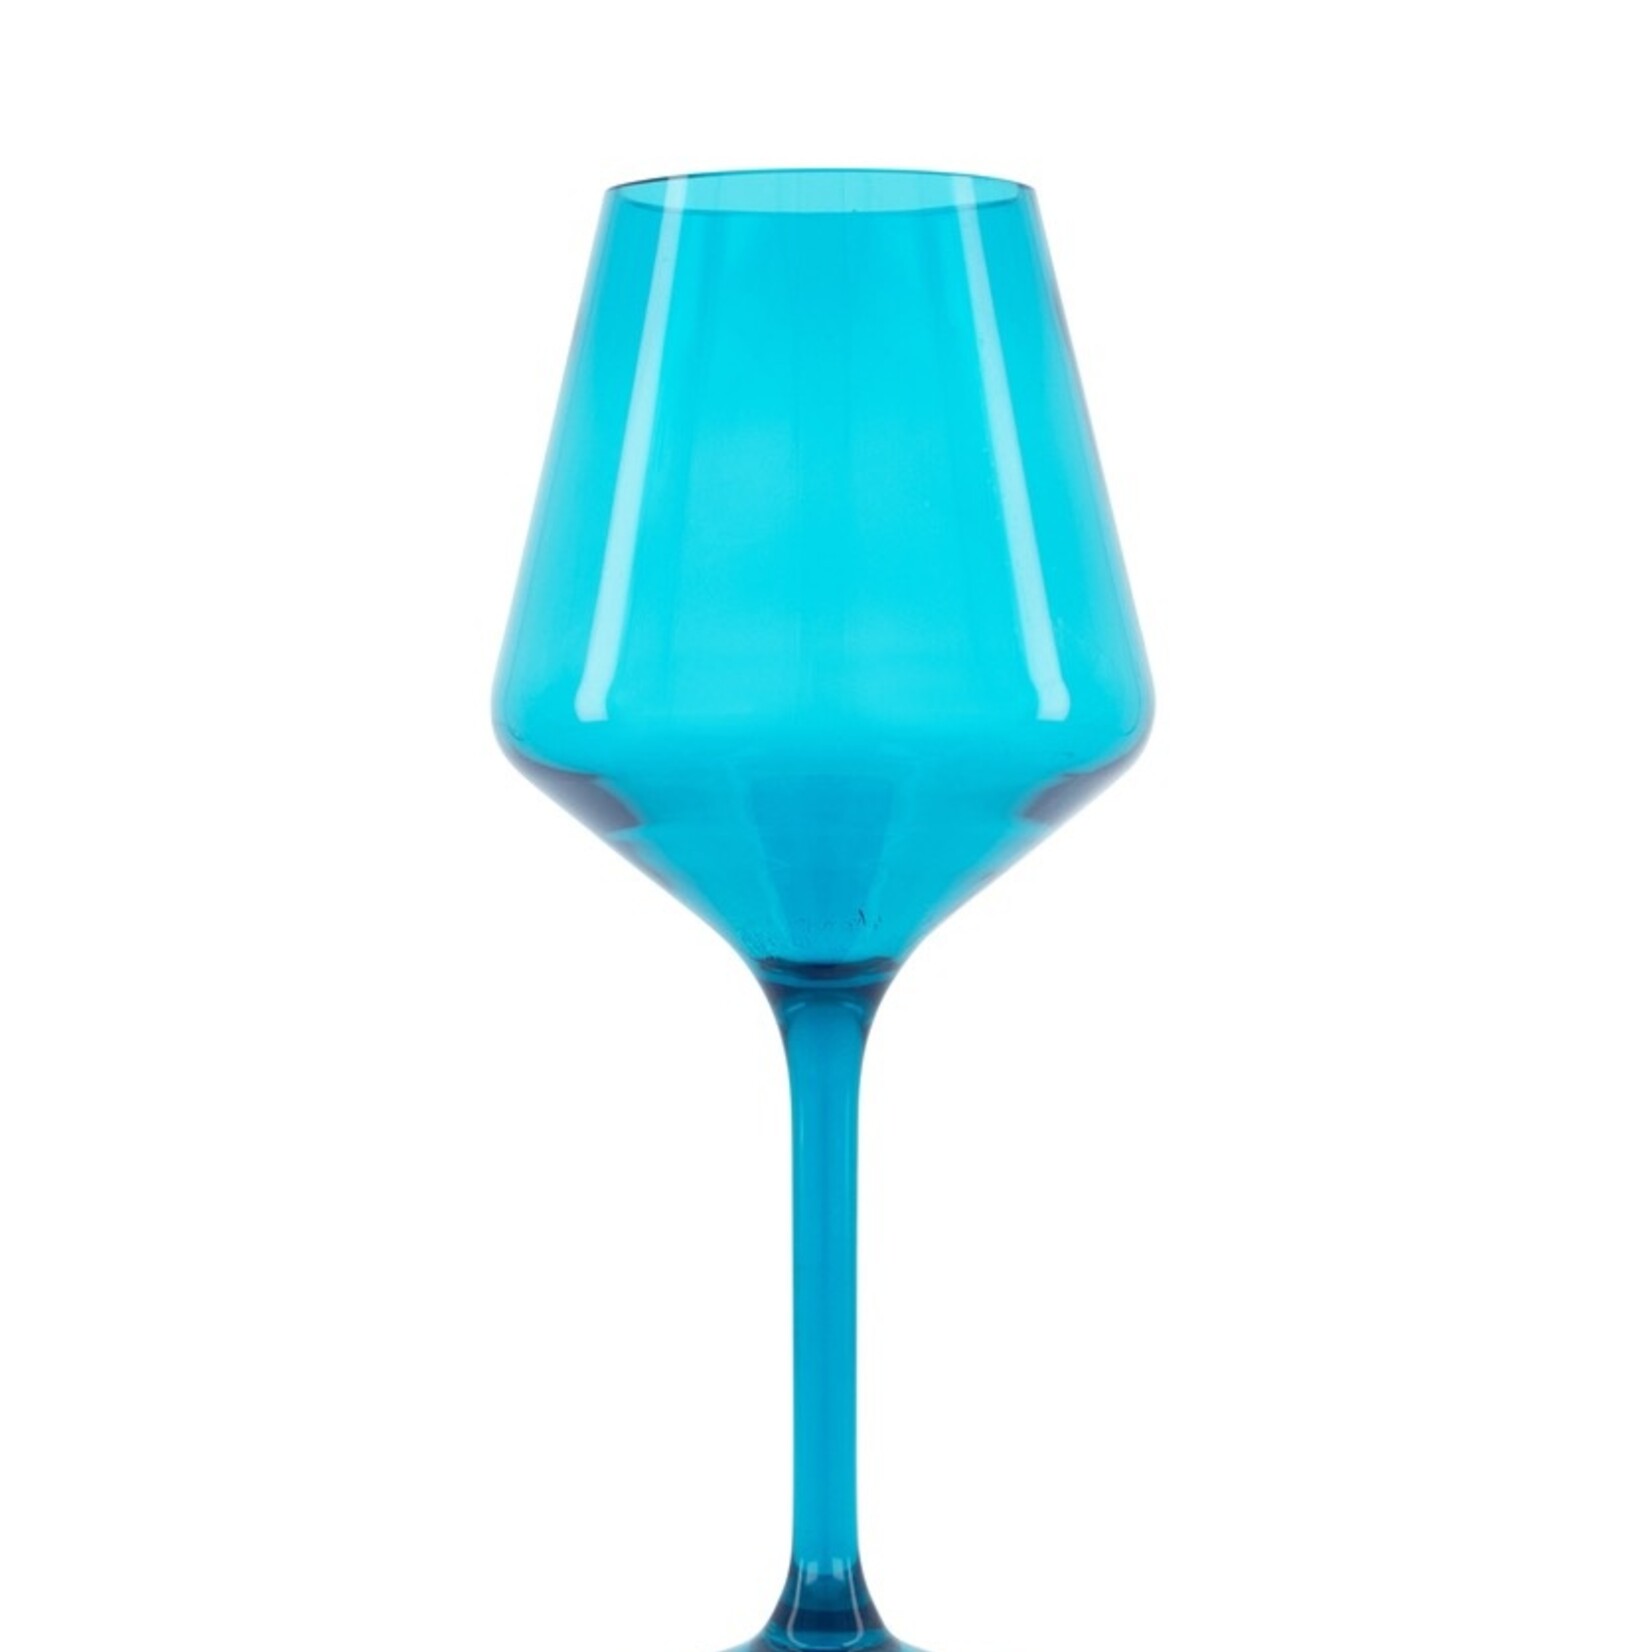 Faire/ Pop Design Set/6 Acrylic Stemmed Wine Glasses Colorful